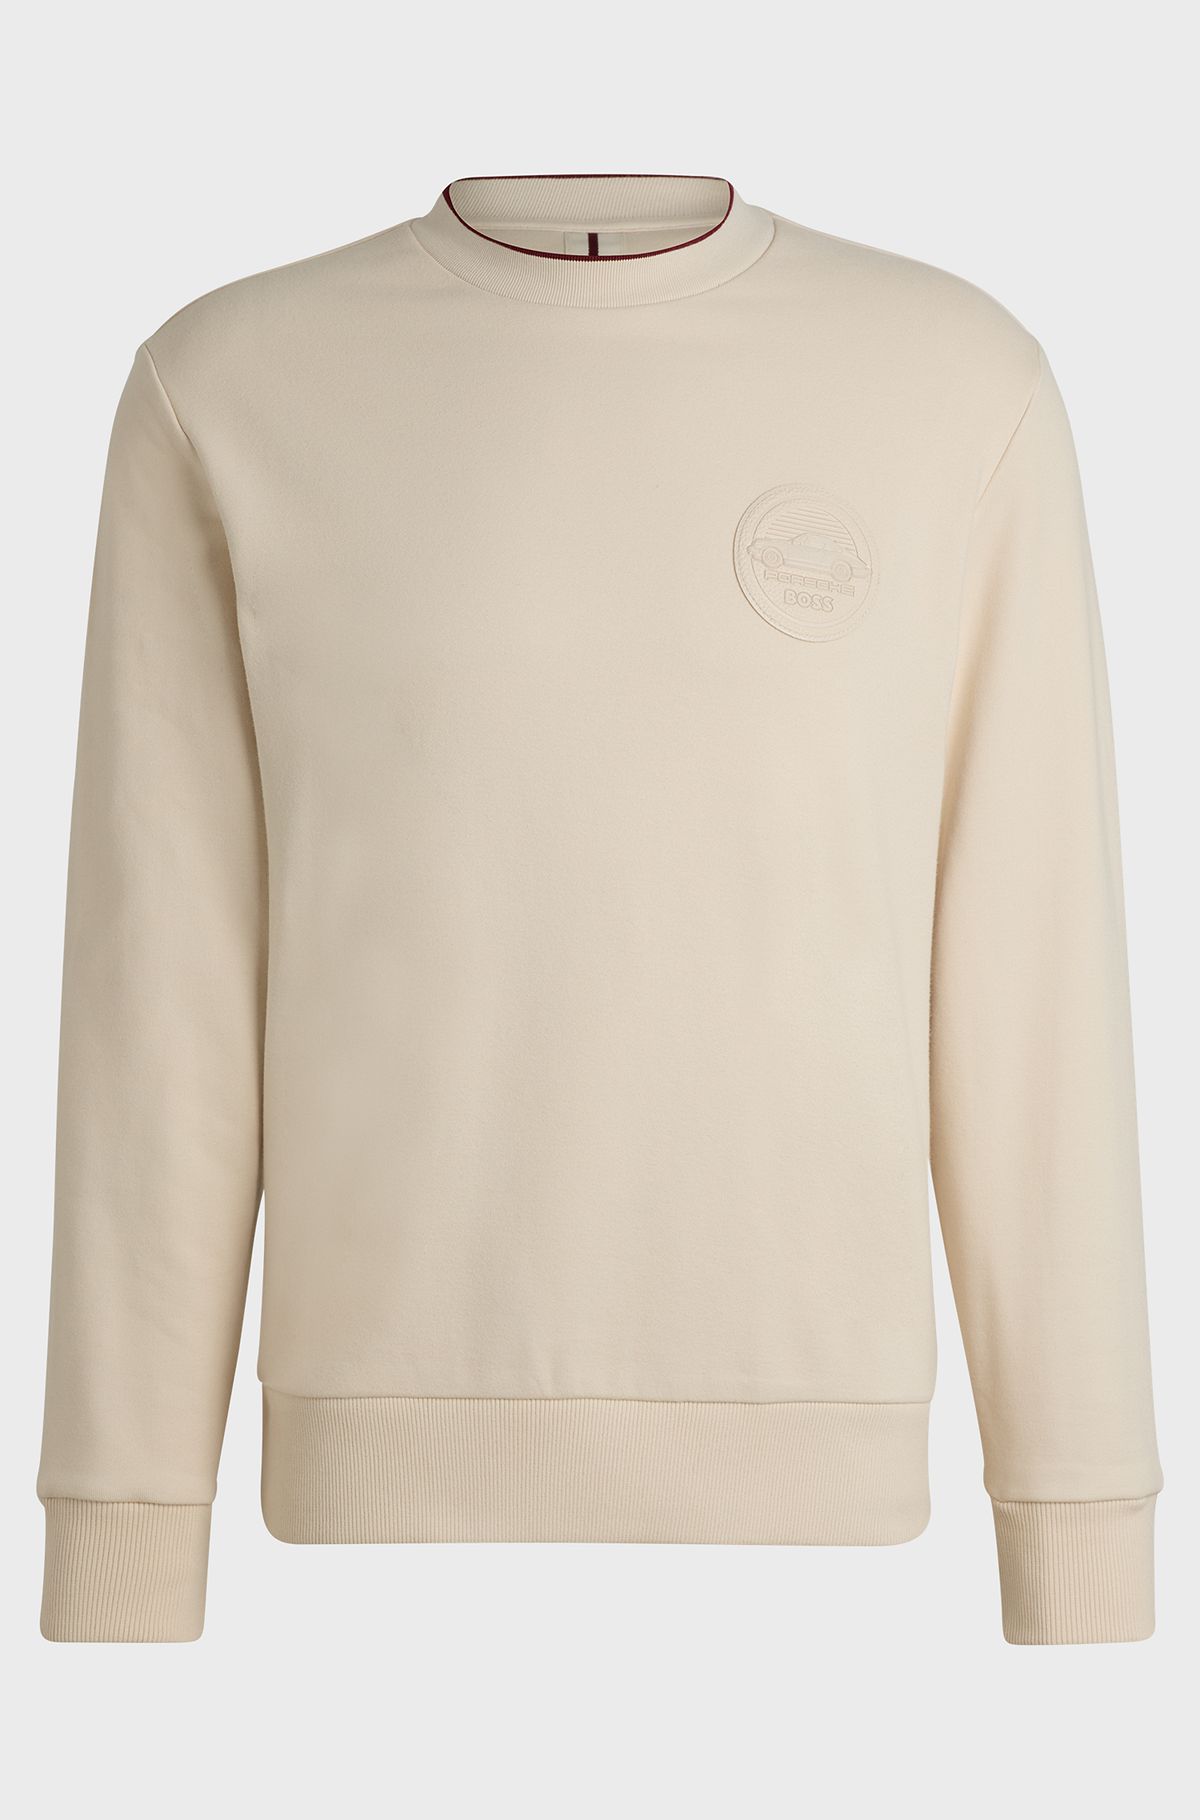 Porsche x BOSS cotton-blend sweatshirt with special branding, Natural